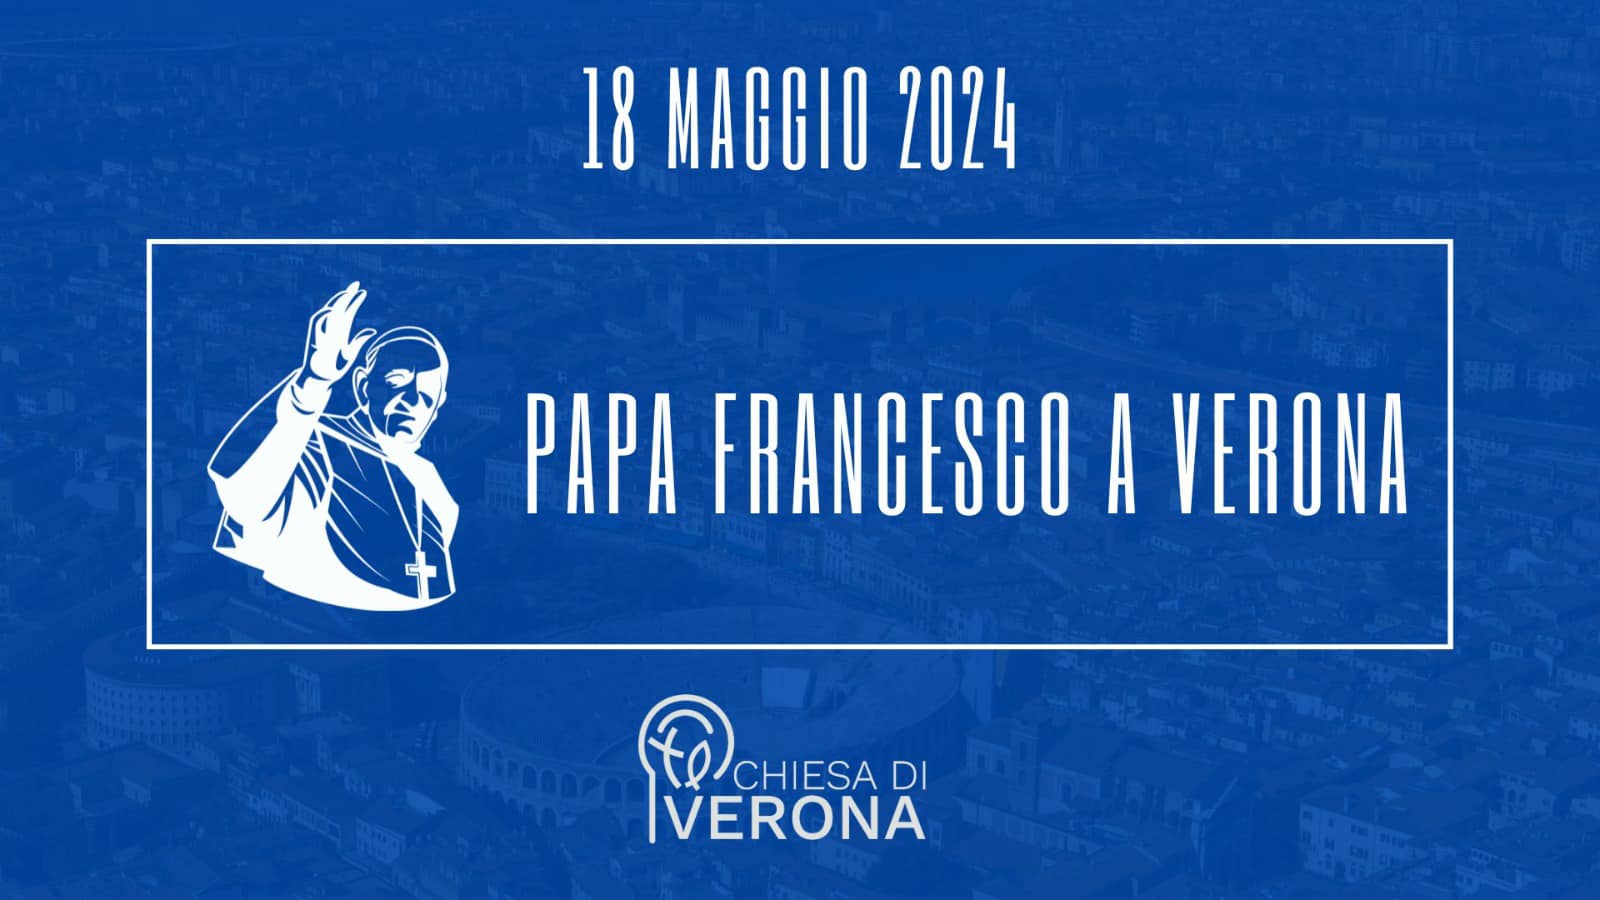 𝗣𝗮𝗽𝗮 𝗙𝗿𝗮𝗻𝗰𝗲𝘀𝗰𝗼 𝗮 𝗩𝗲𝗿𝗼𝗻𝗮 
 A 1650 anni dalla morte del santo pastore e patrono Zeno, papa Francesco sabato 18 maggio 2024 visiterà la Chies…